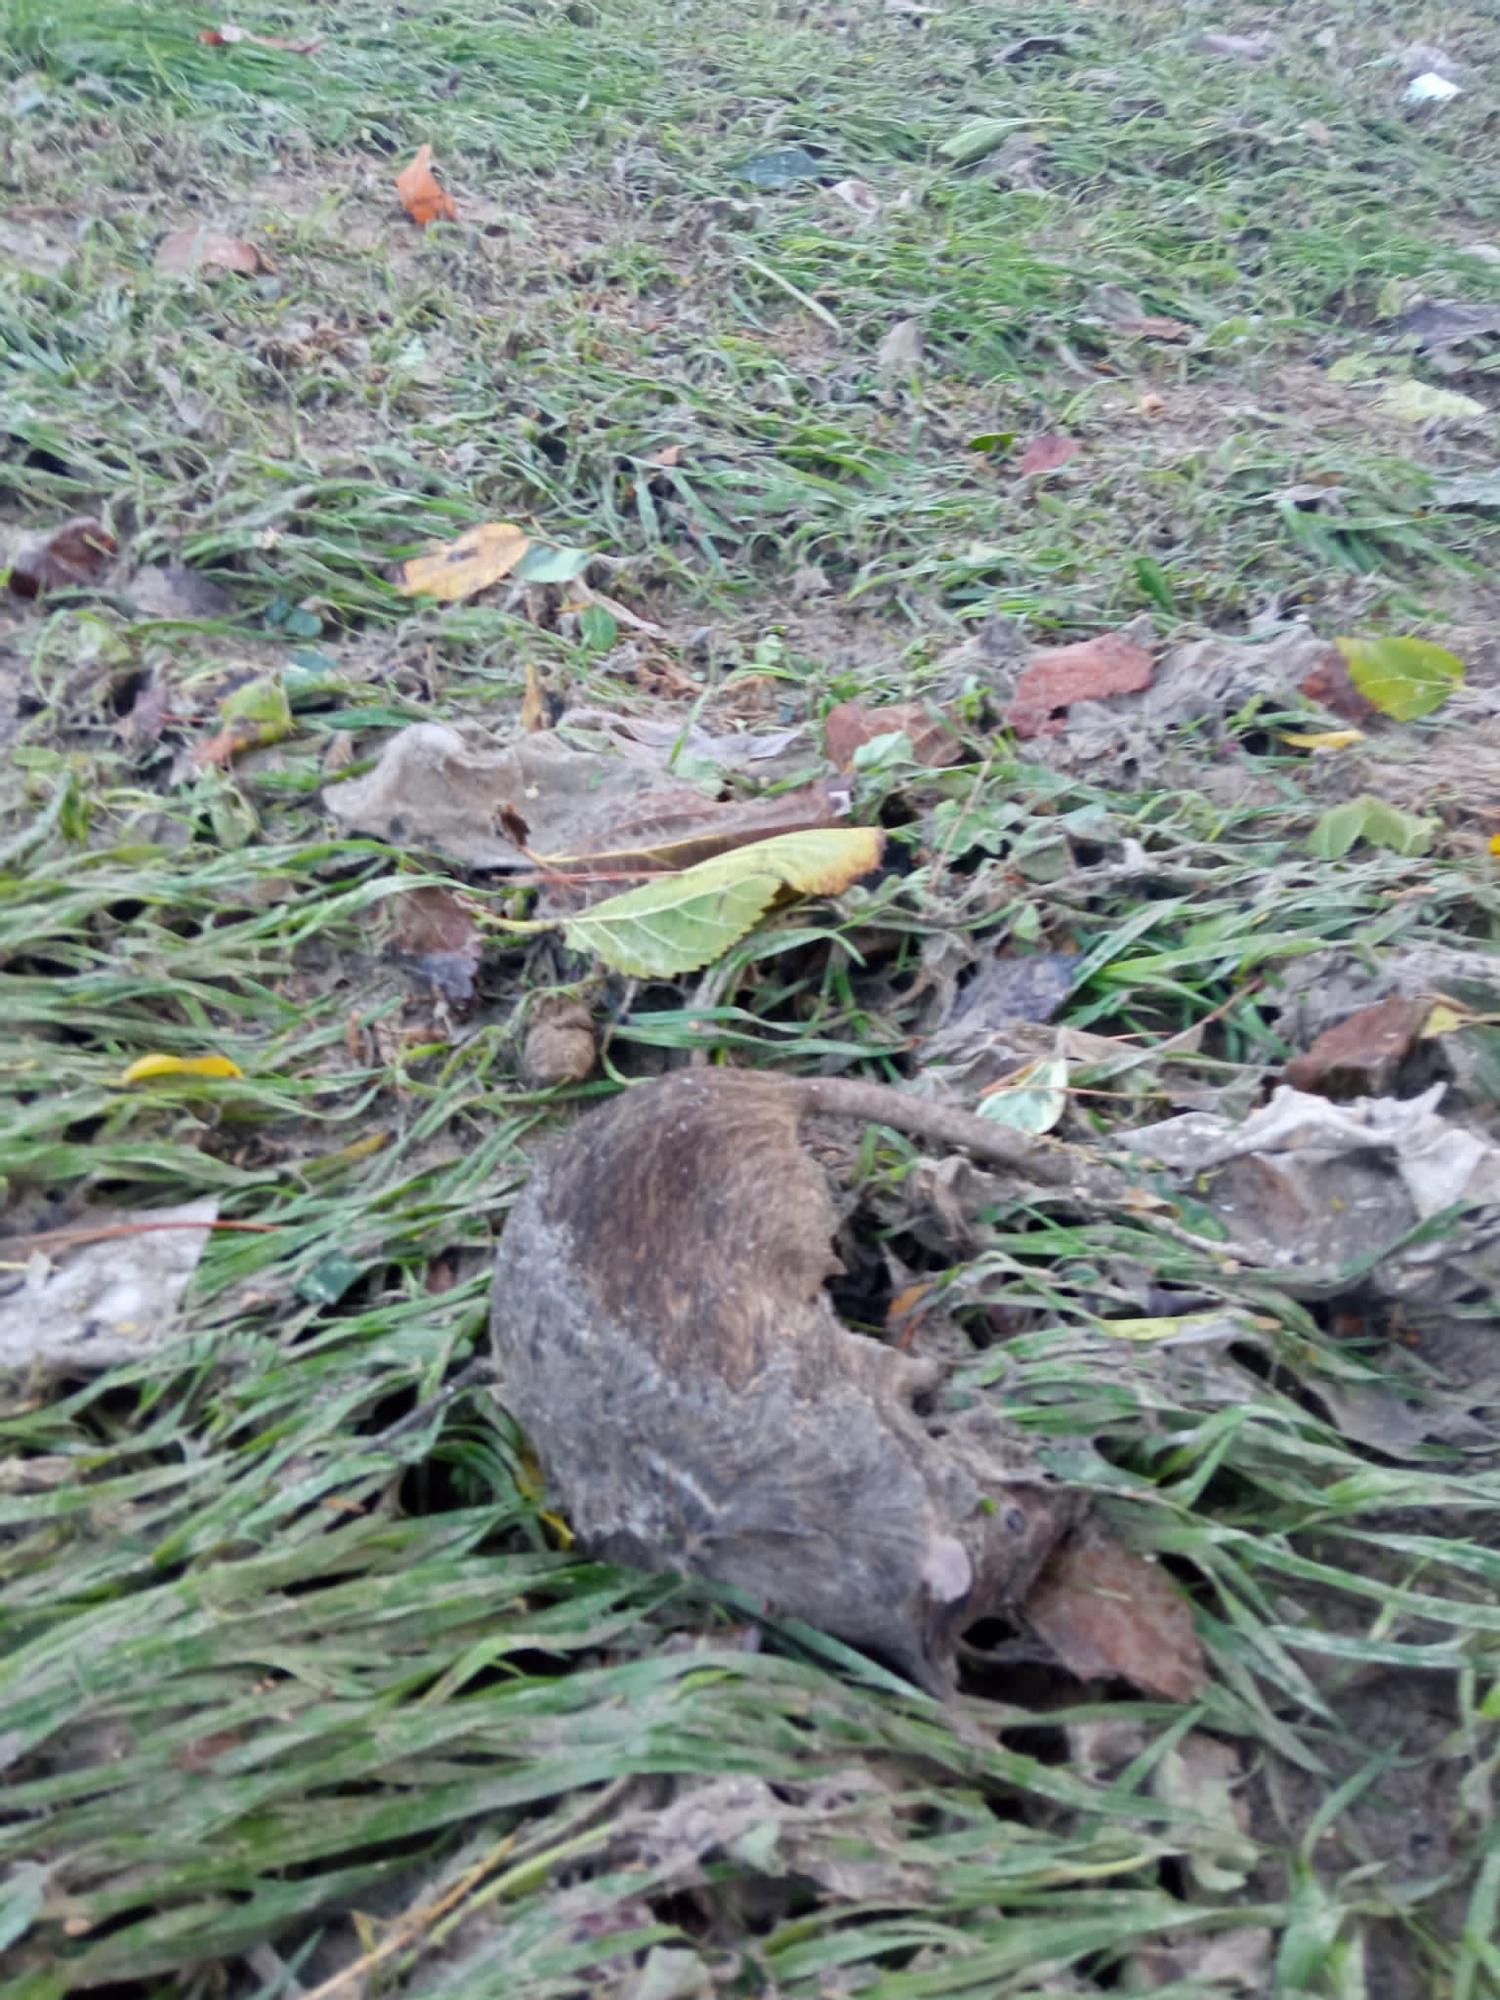 Ratas muertas, basura y restos fecales tras la tormenta en Alicante